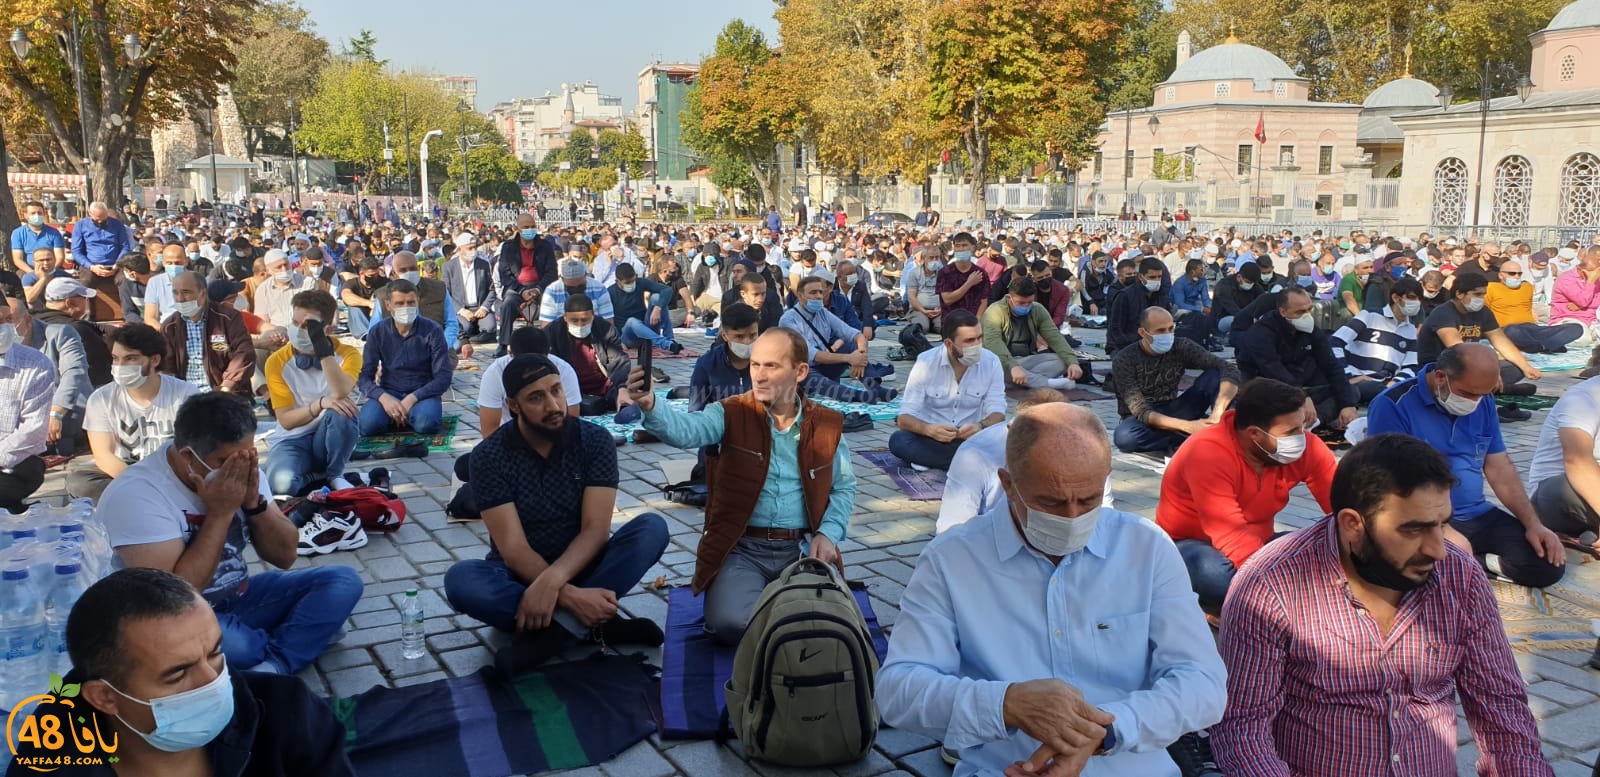  فيديو وصور من إقامة صلاة الجمعة في مسجد آيا صوفيا باسطنبول 